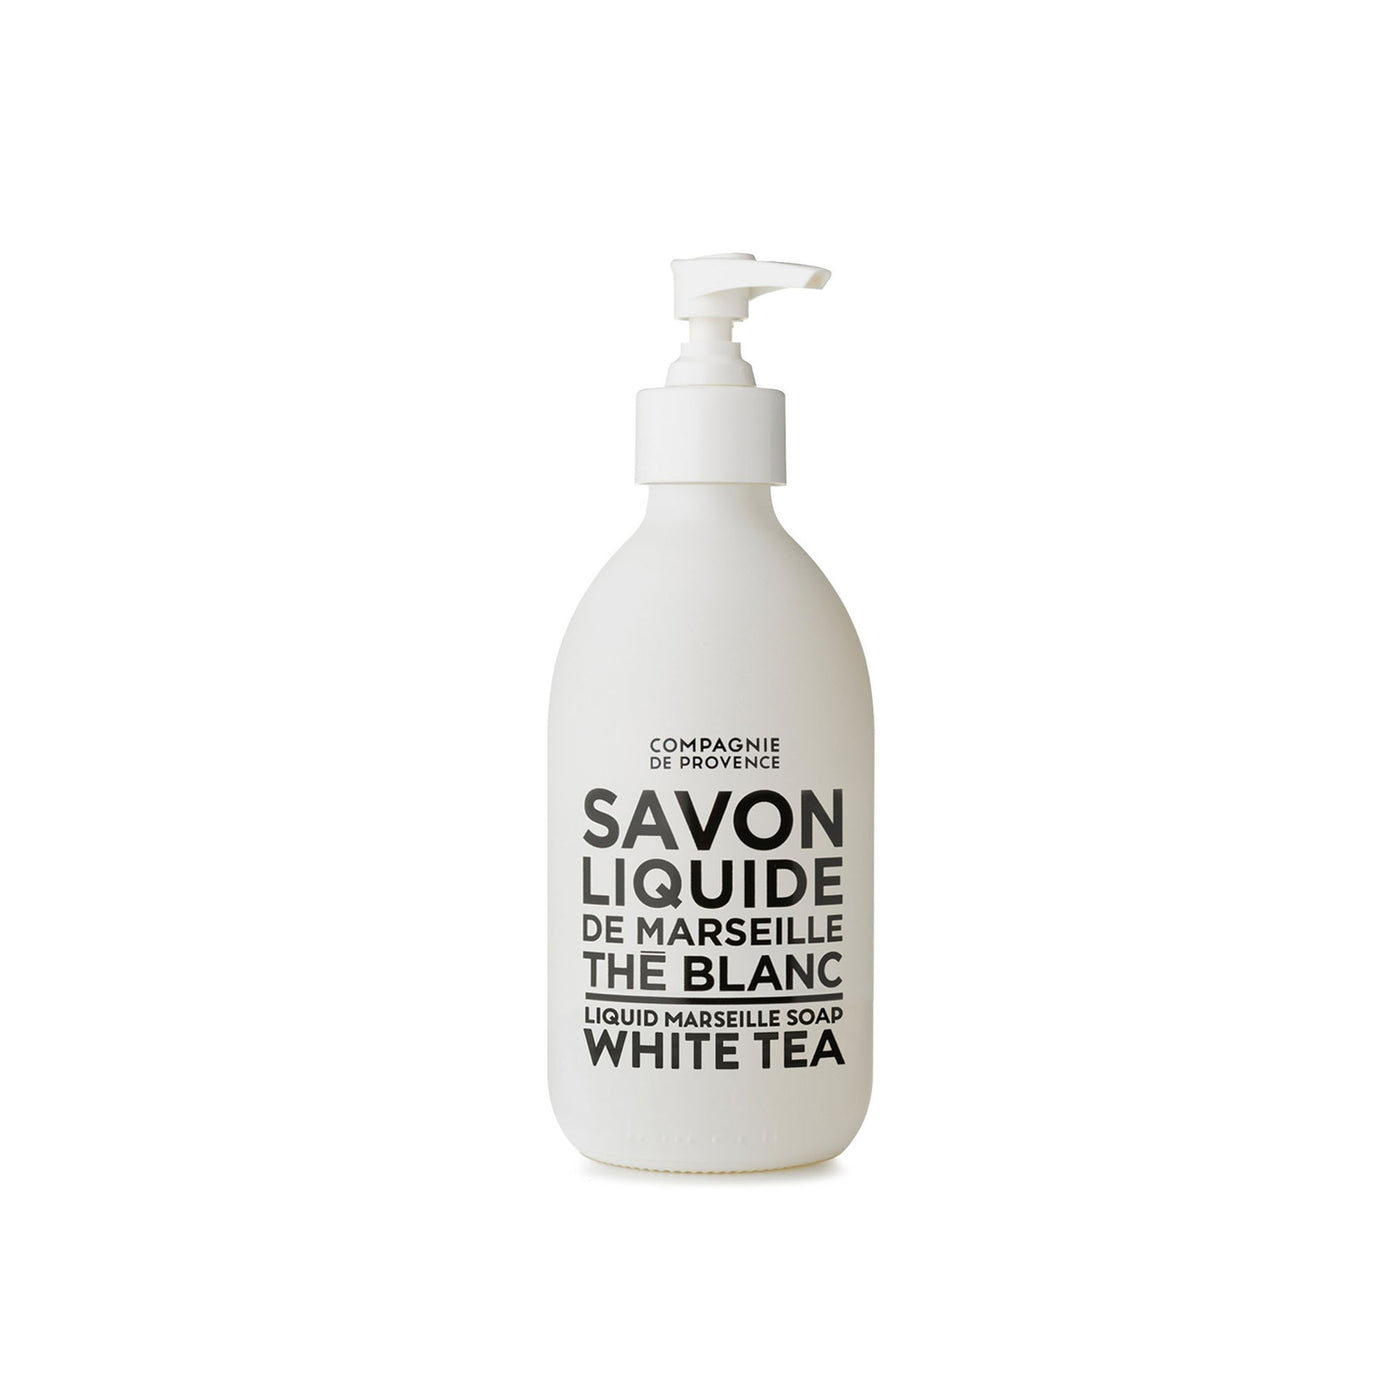 White Tea Hand Soap